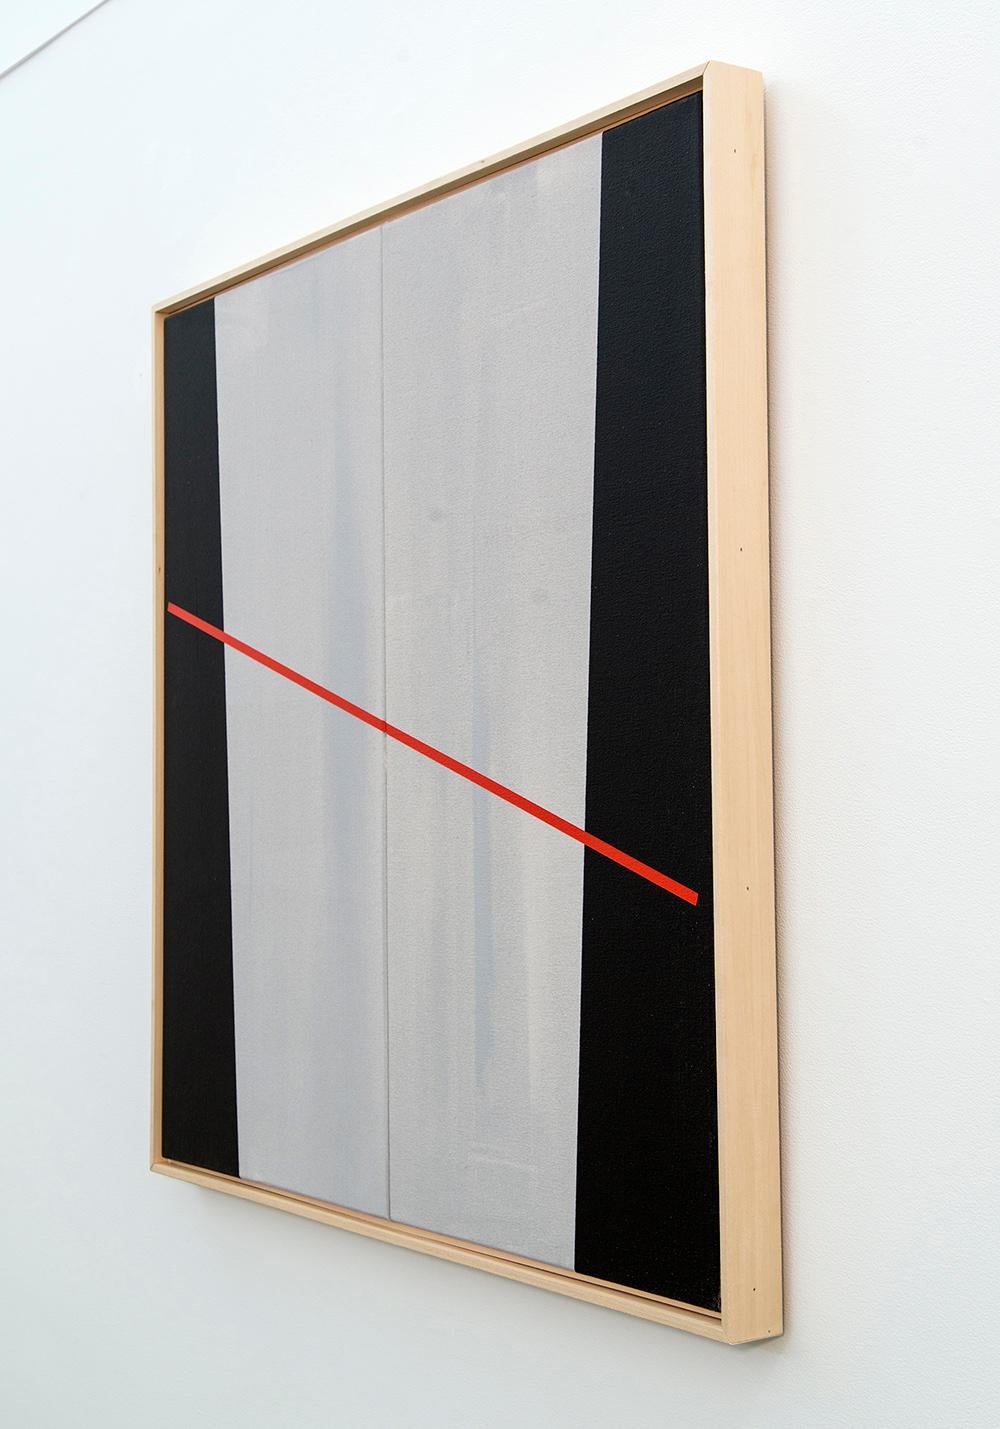 Ungewöhnliche Begriffe - klar, schwarz, grau, rot, geometrisch abstrakt, Acryl auf Leinwand (Hard Edge), Painting, von Milly Ristvedt